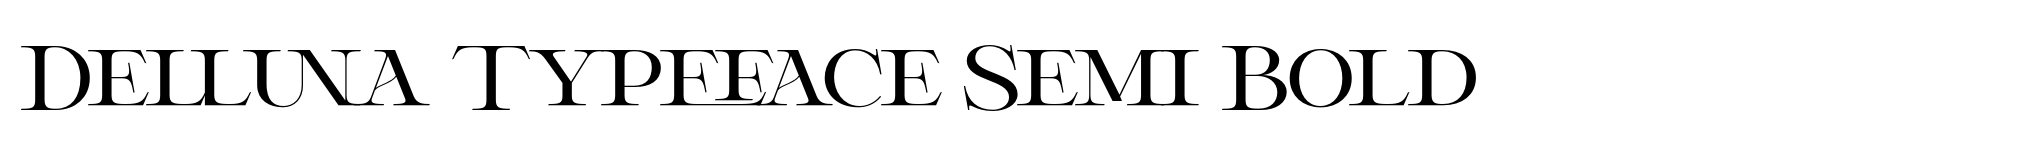 Delluna Typeface Semi Bold image